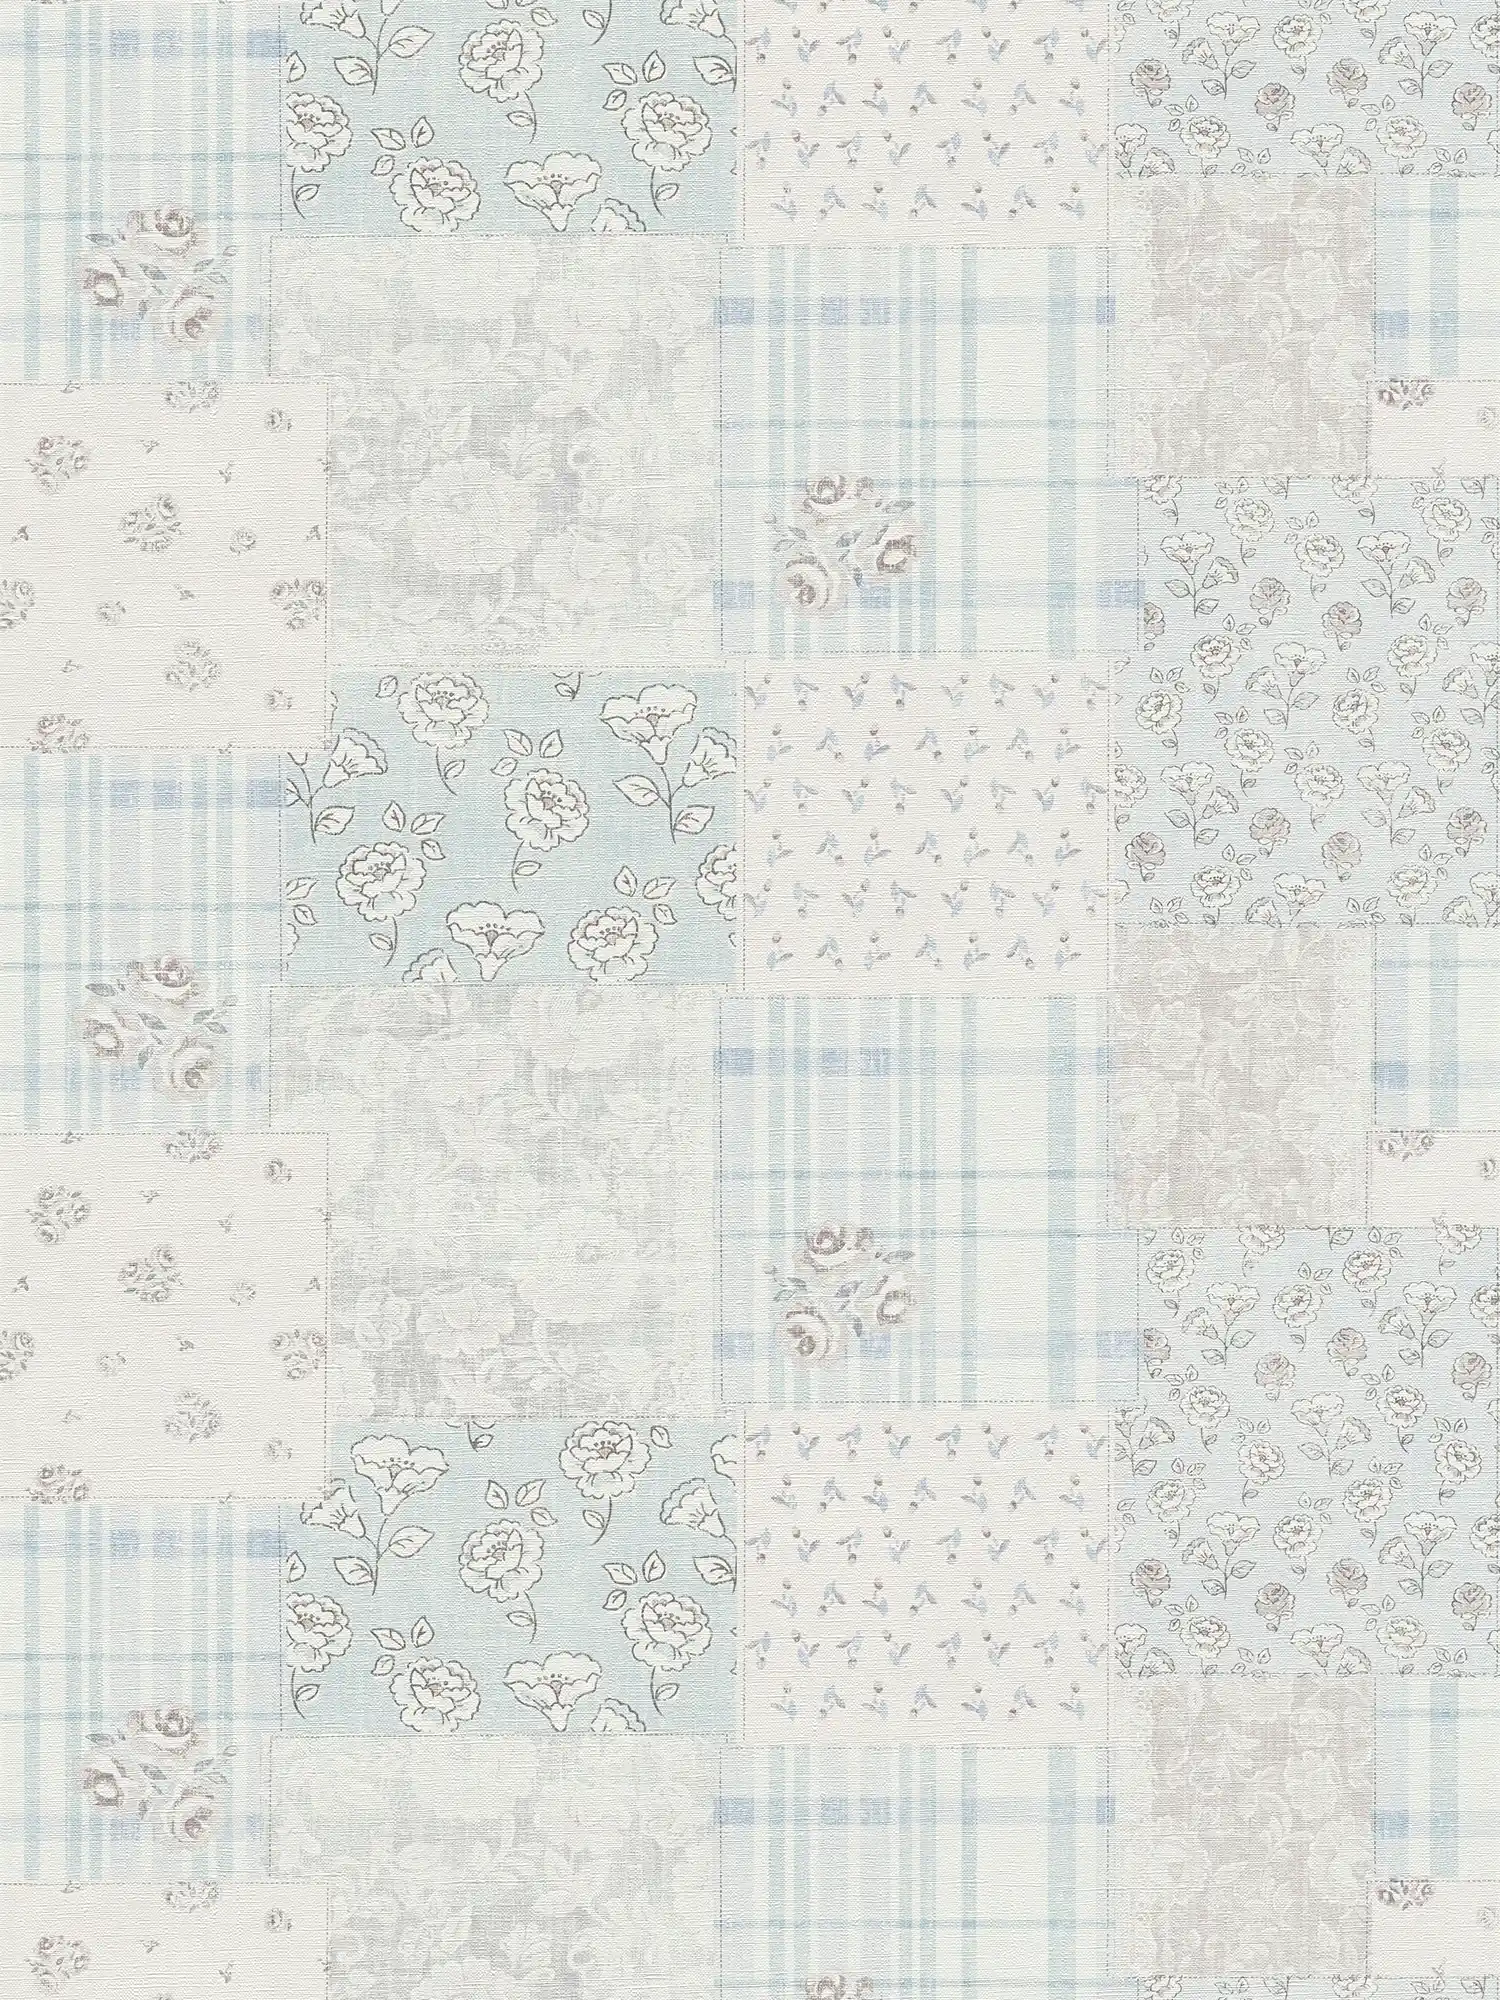 Vliesbehang bloemenpatroon en geruit landelijke stijl - lichtblauw, grijs, wit
